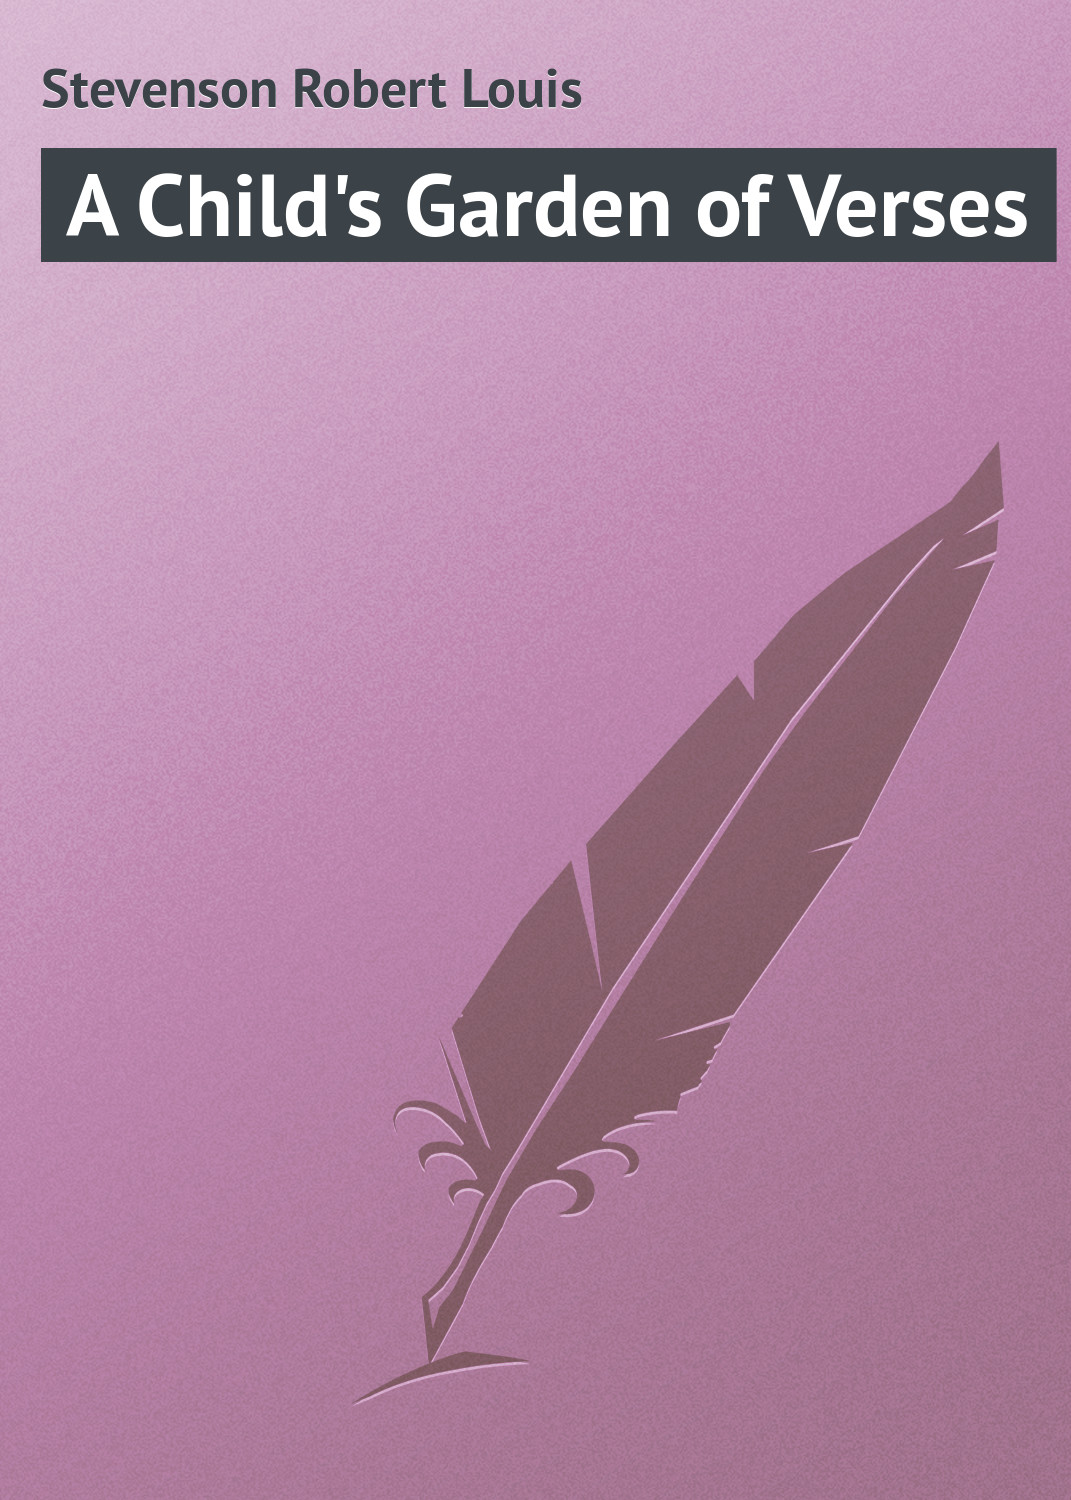 Книга A Child's Garden of Verses из серии , созданная Robert Stevenson, может относится к жанру Поэзия, Зарубежная классика, Зарубежные стихи. Стоимость электронной книги A Child's Garden of Verses с идентификатором 23147187 составляет 5.99 руб.